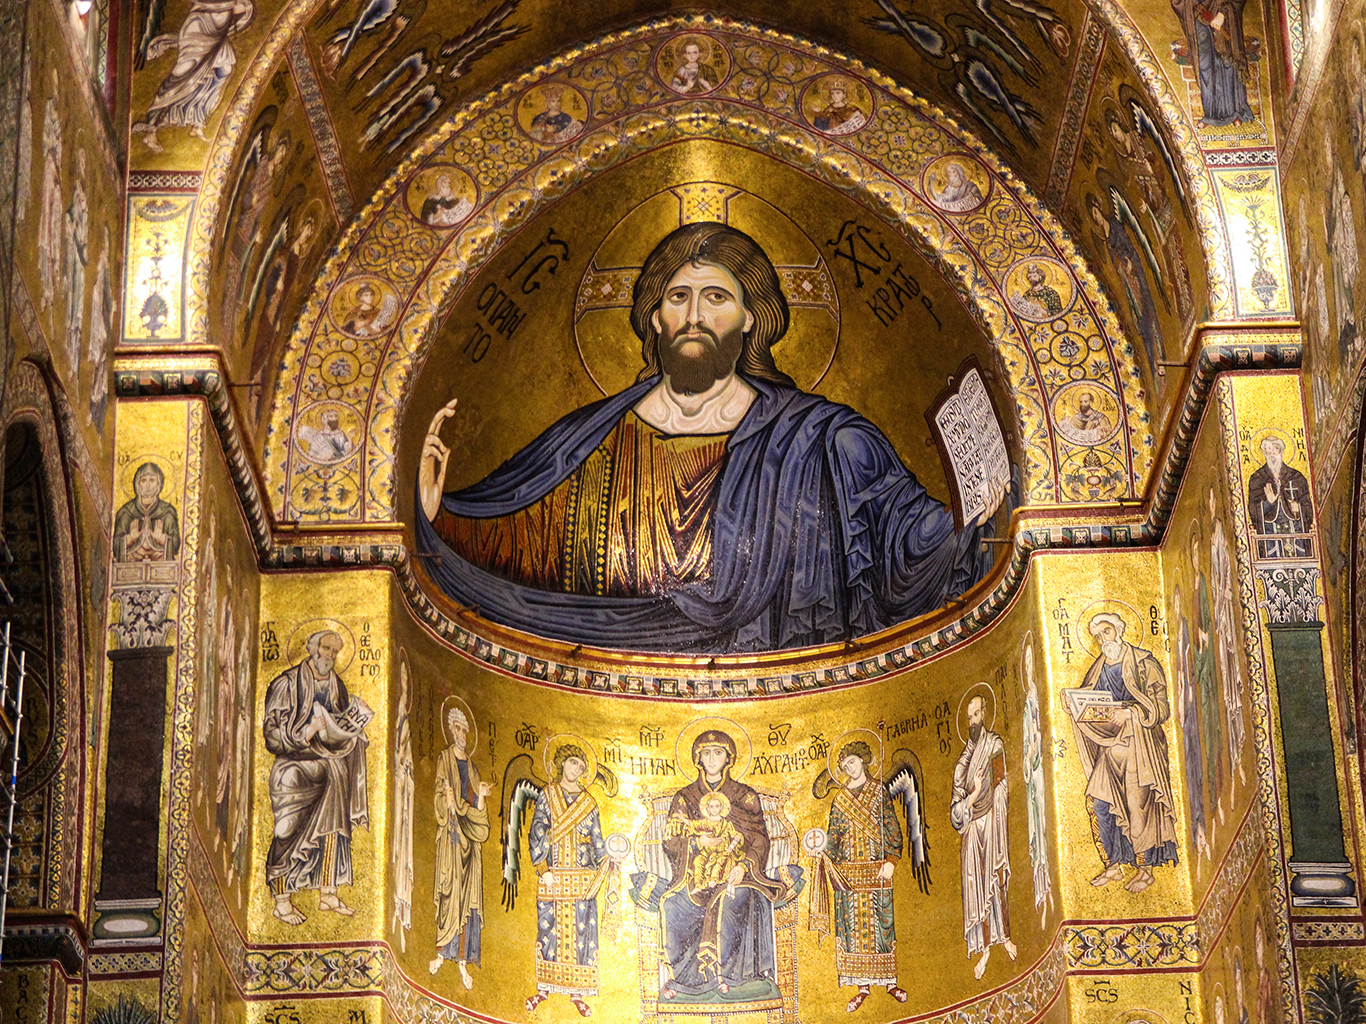 Inteirér apsidy v katedrále Monreale zobrazuje Krista Pantokrata